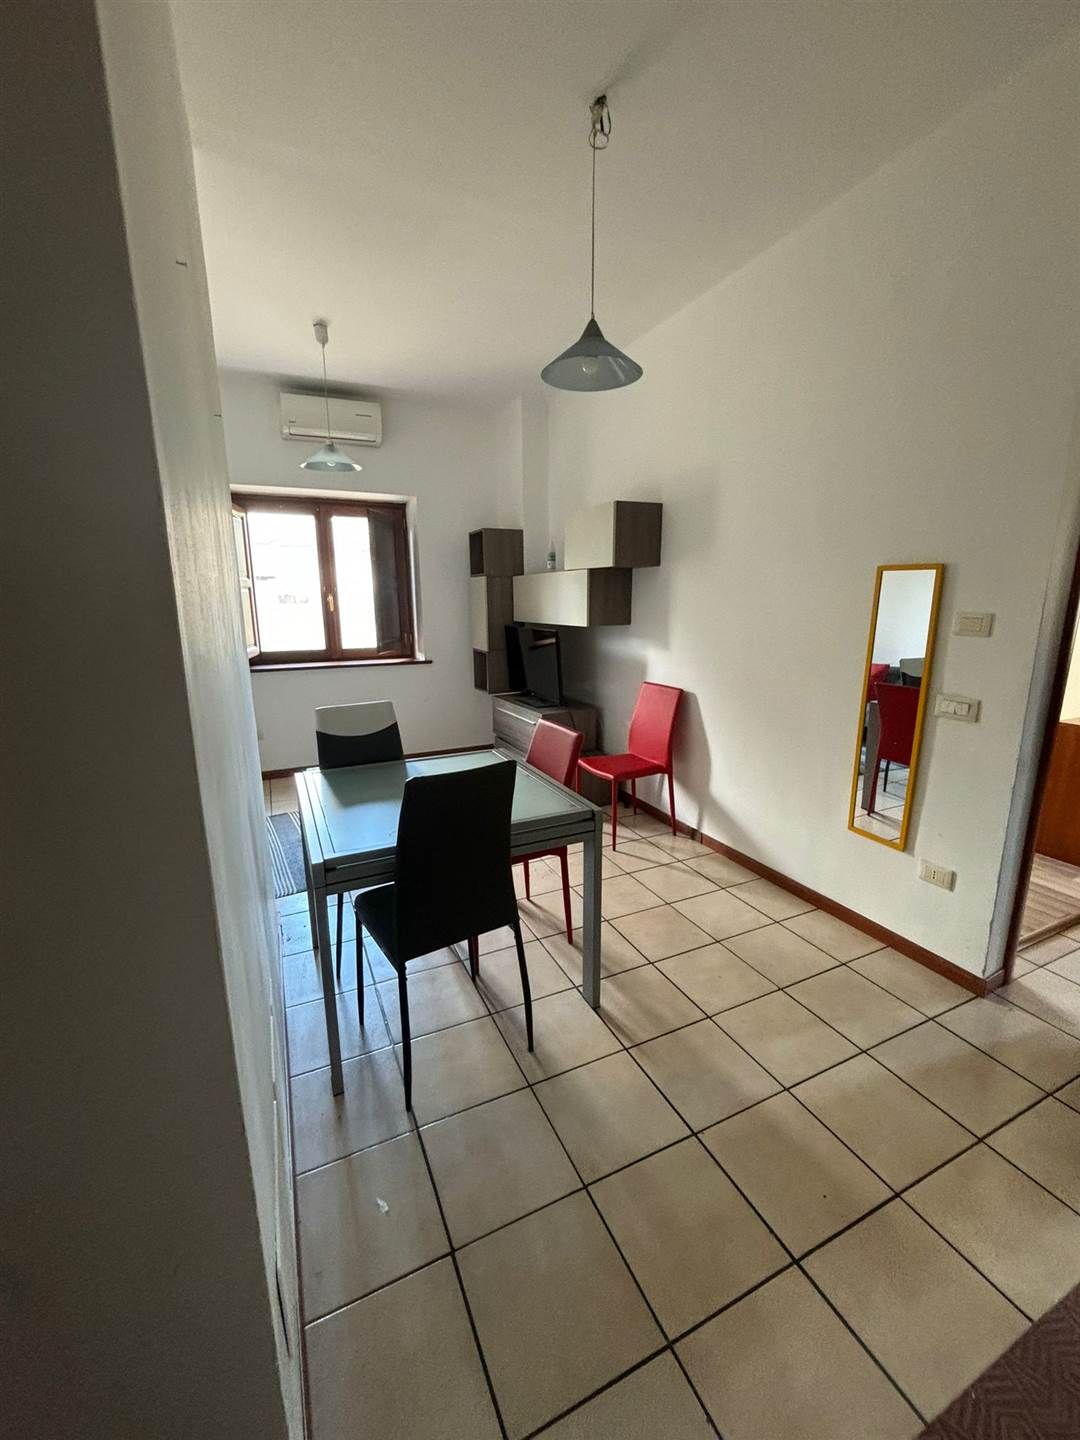 Appartamento in affitto a Rende, 2 locali, zona Località: ARCAVACATA, prezzo € 390 | PortaleAgenzieImmobiliari.it